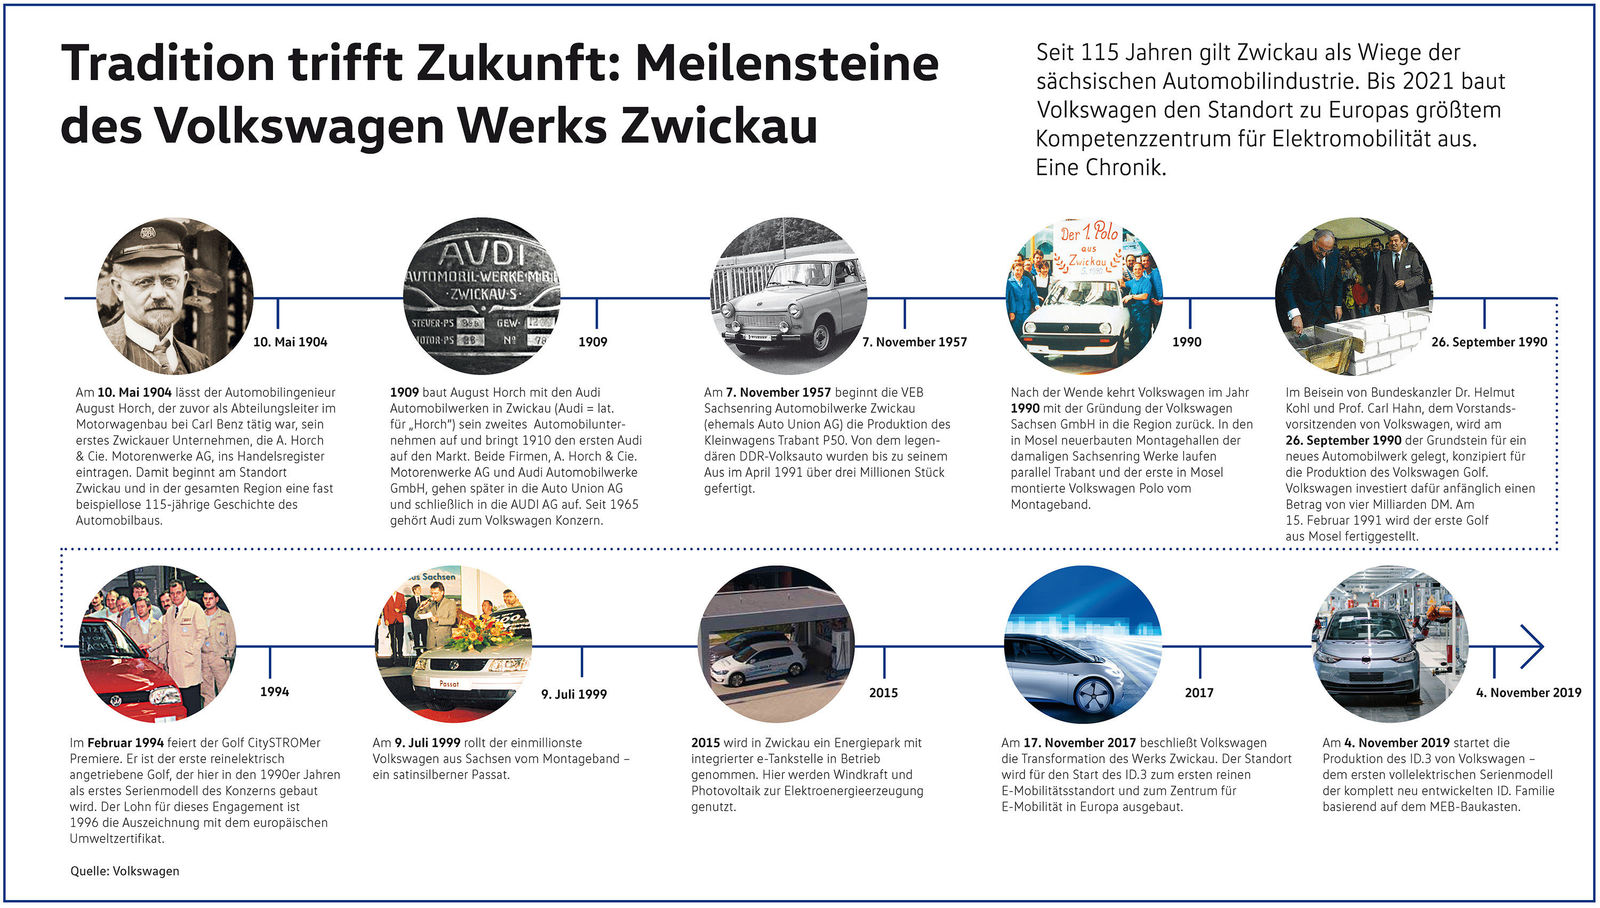 Tradition trifft Zukunft: Meilensteine des Volkswagen Werks Zwickau